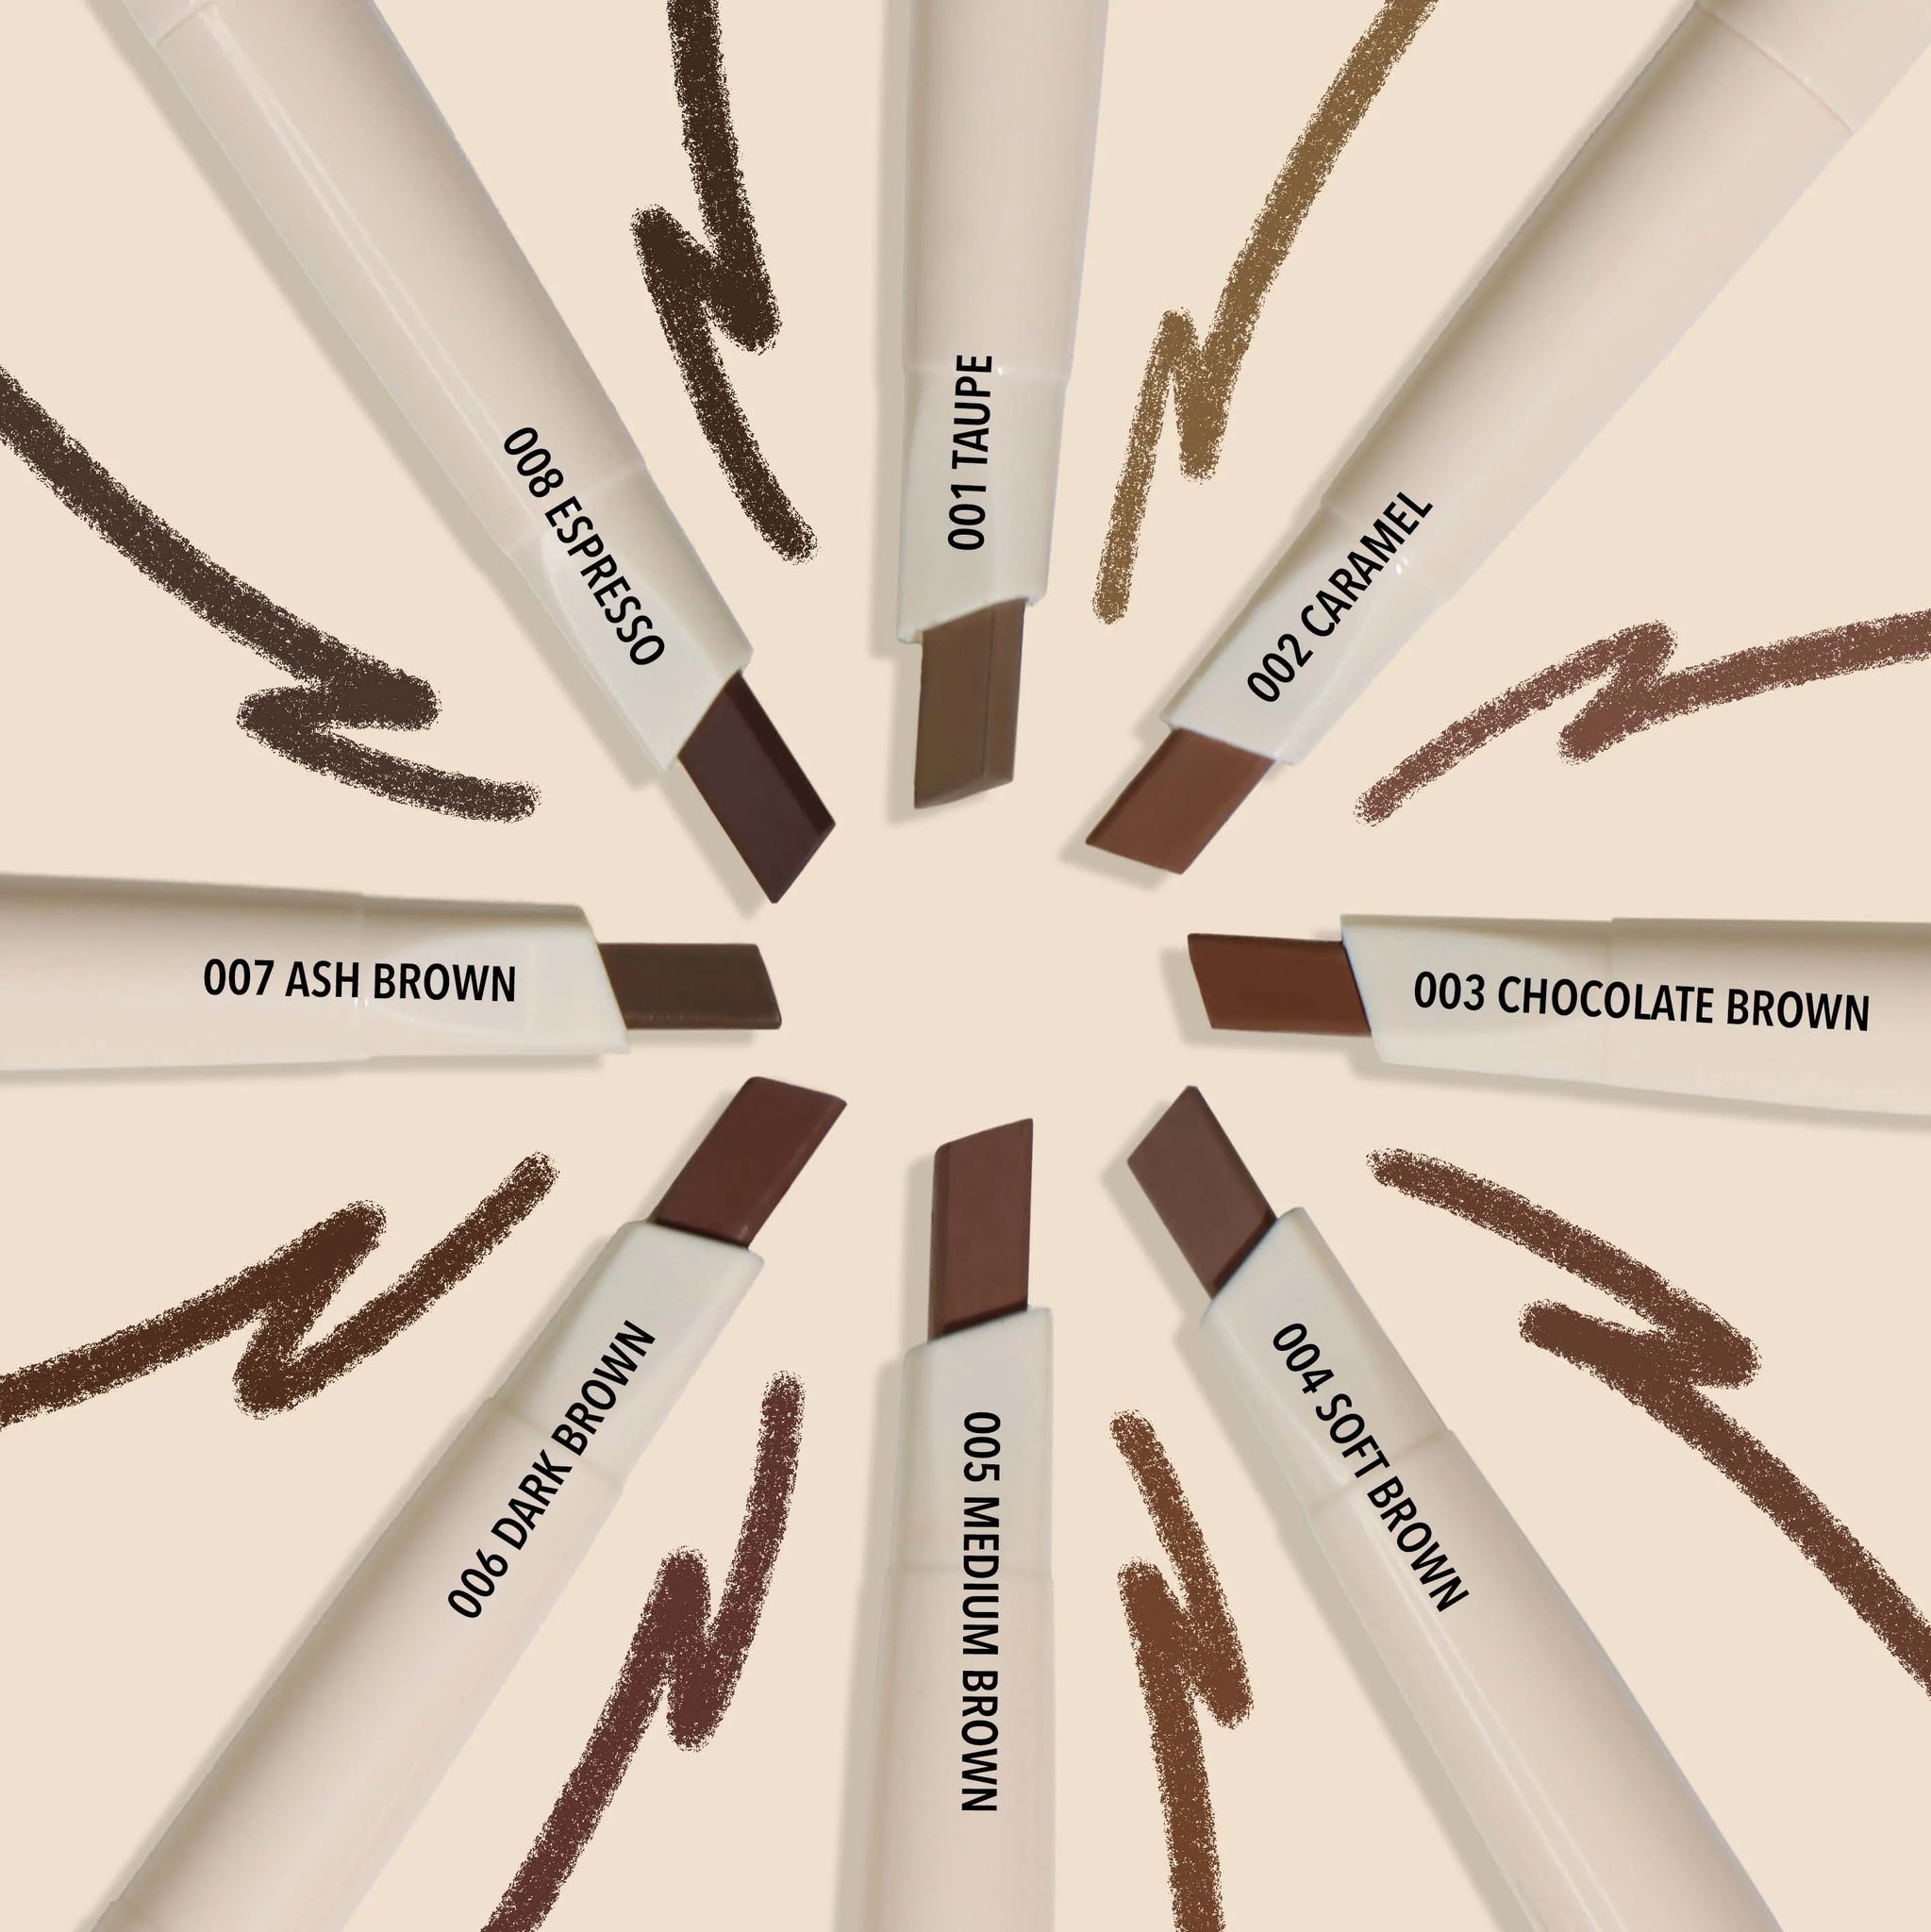 Moira Angled Brow Pencil: Chocolate Brown